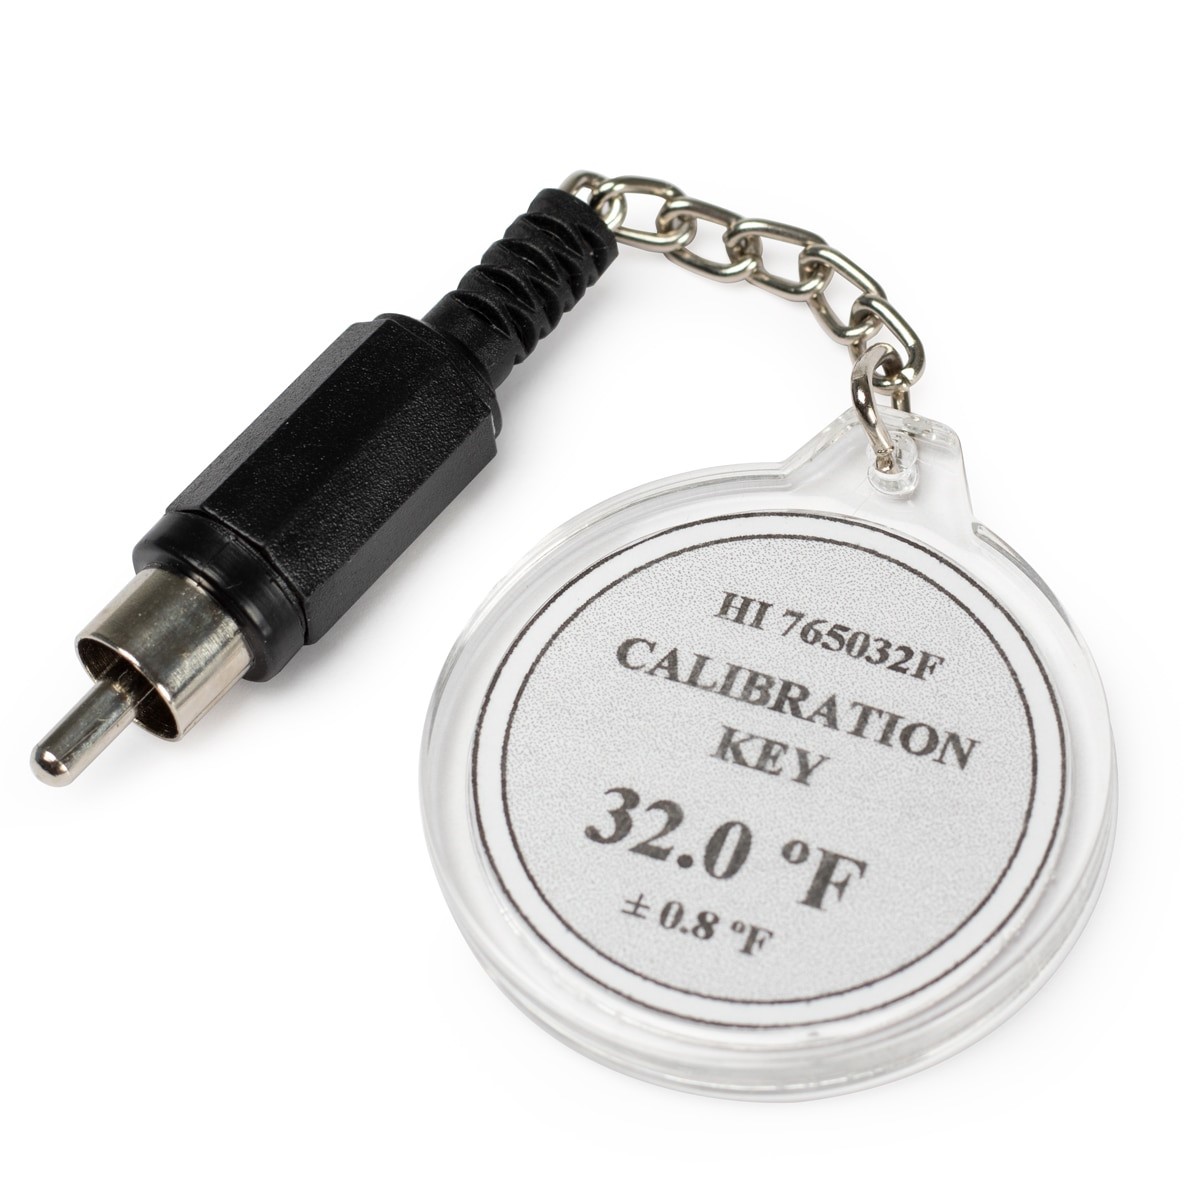 HI765032F Calibration Check Key at 32°F (HI765 Probes)